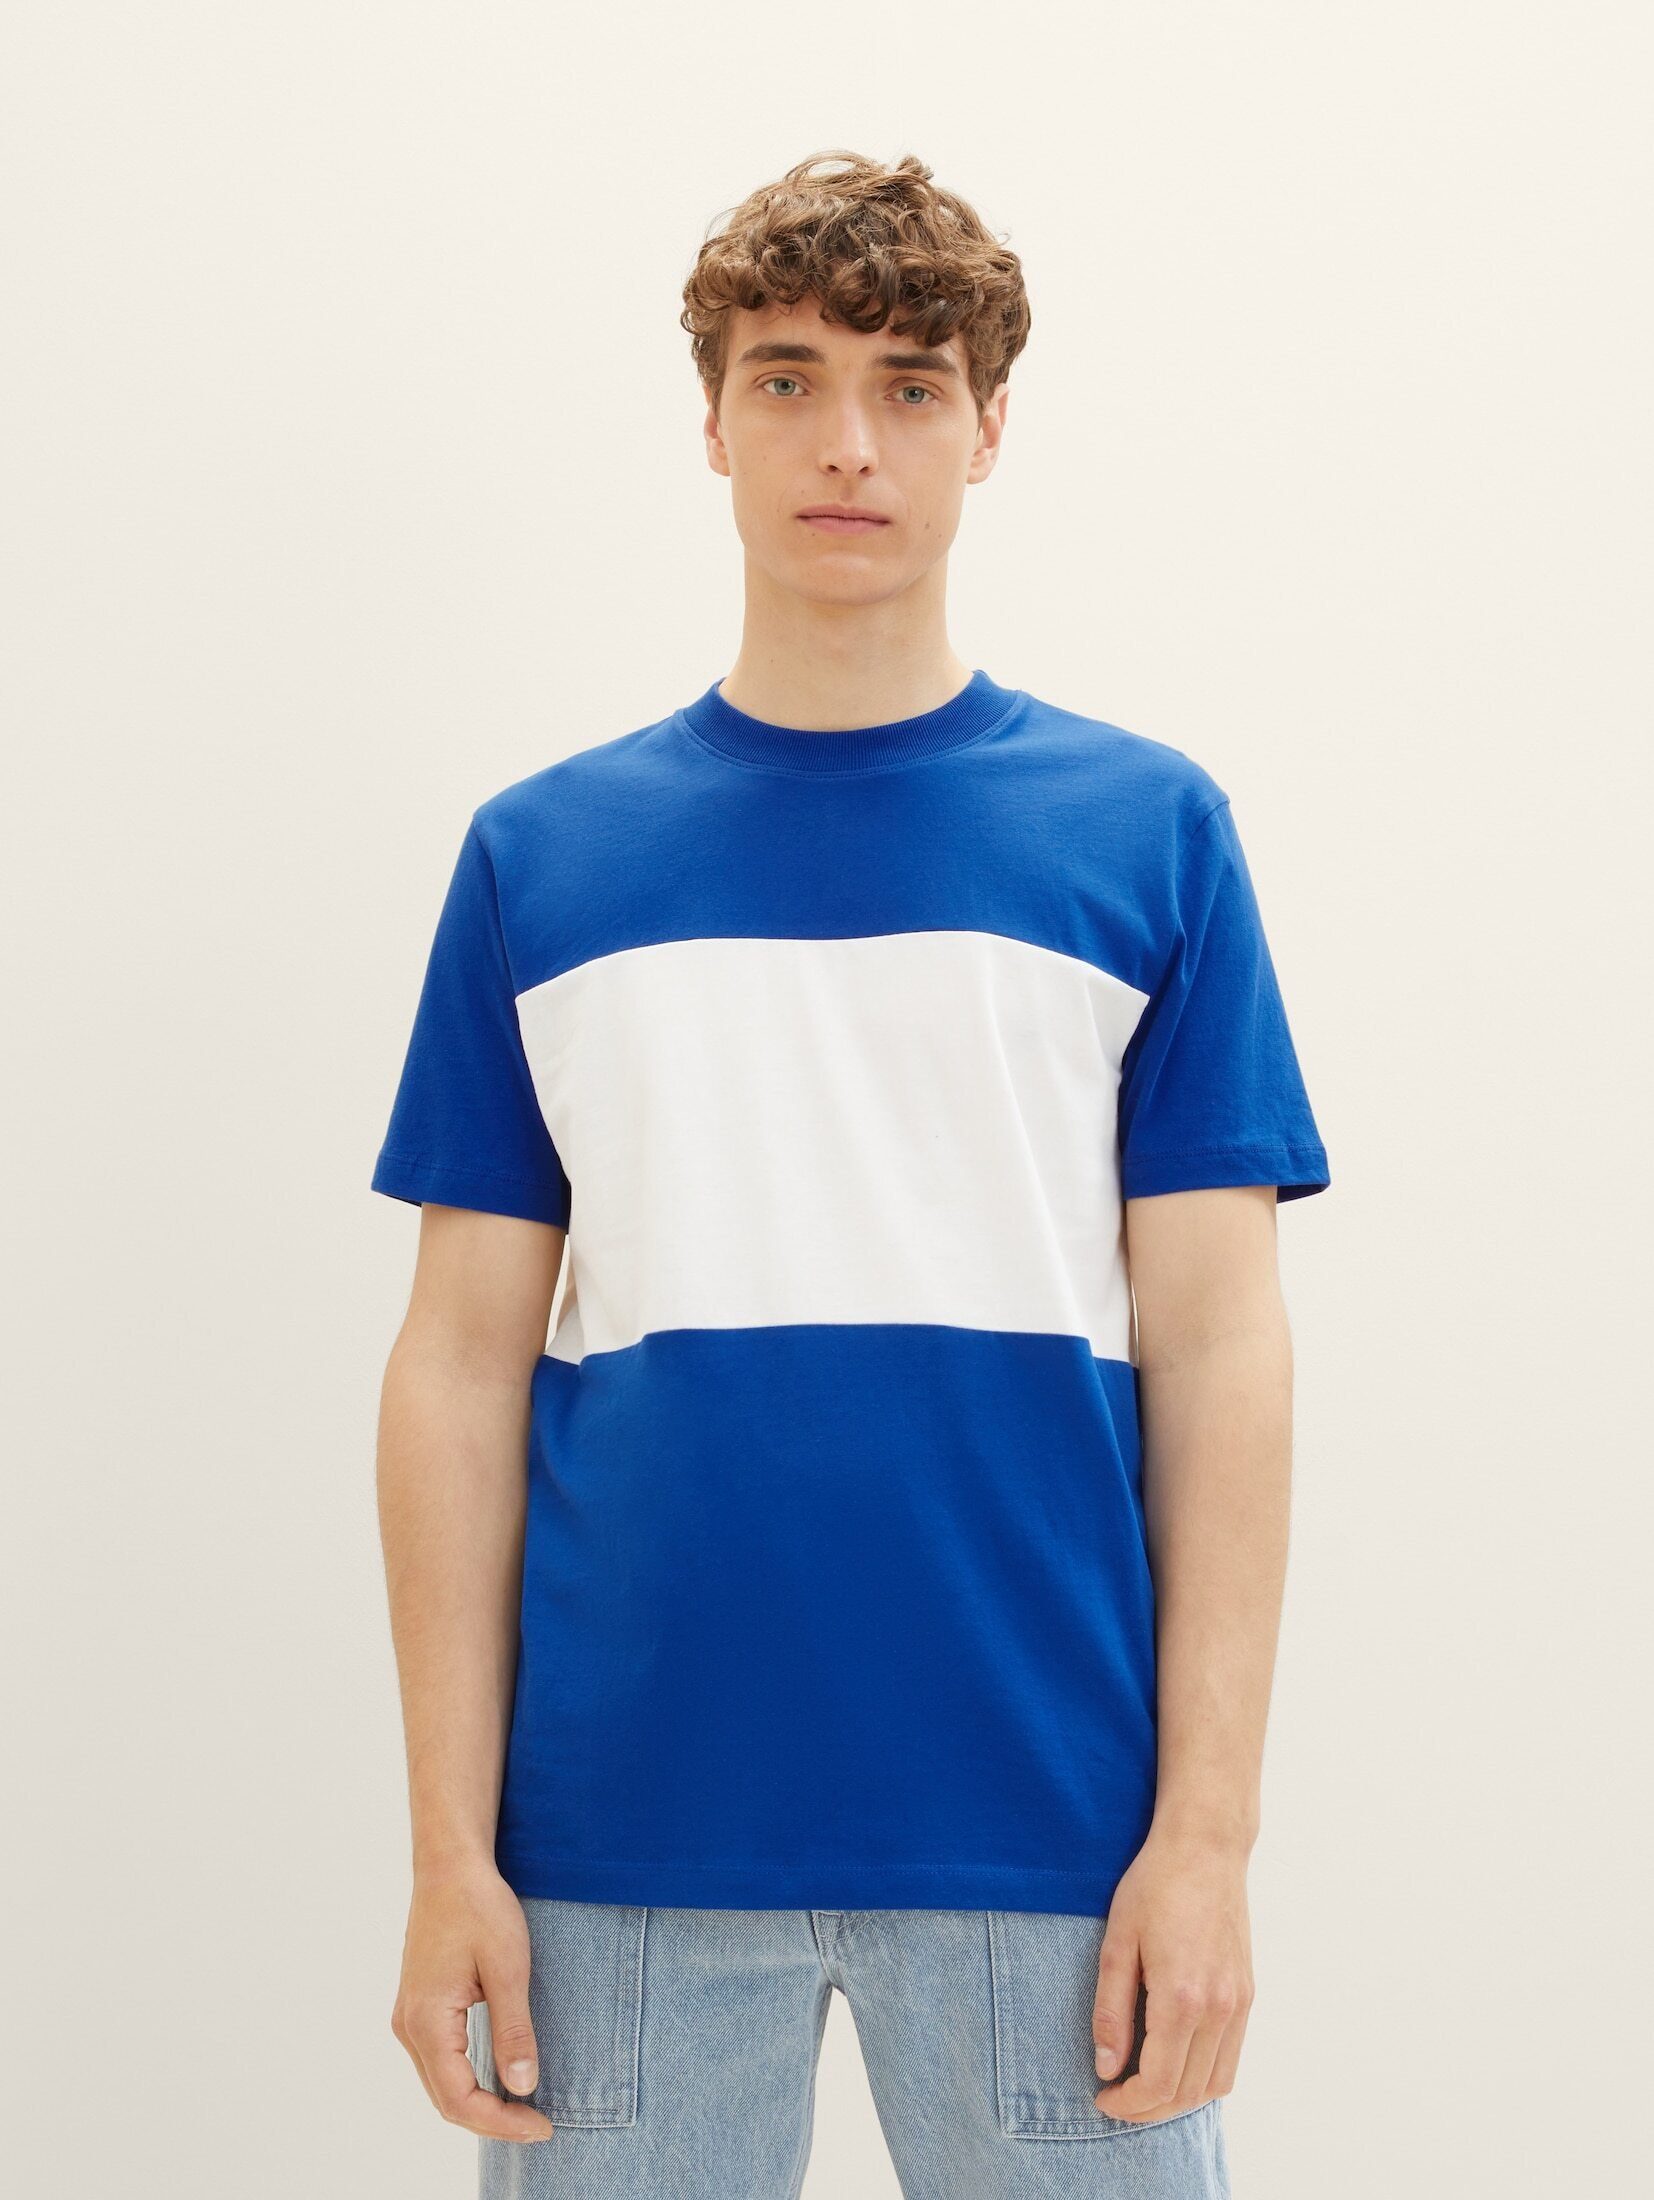 TOM TAILOR Denim T-Shirt Cutline T-Shirt shiny royal blue | T-Shirts